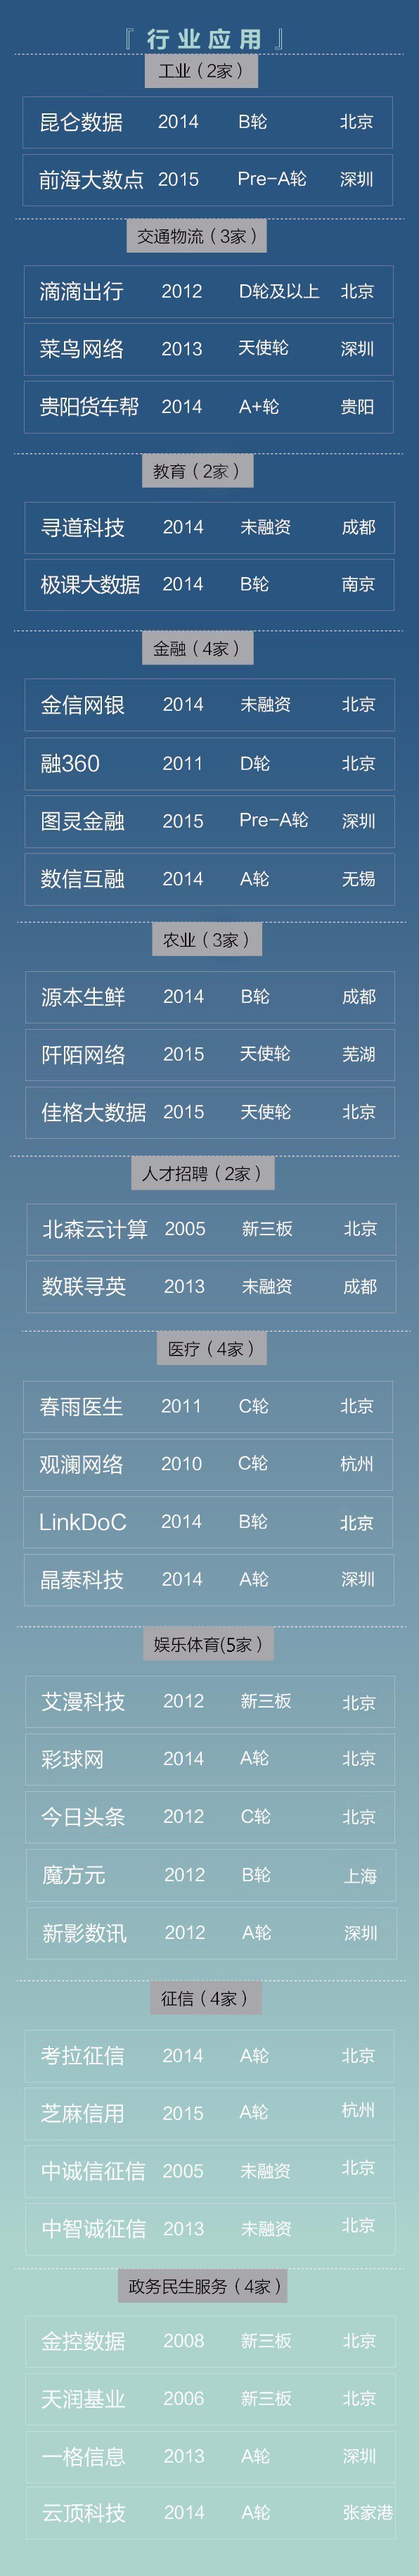 码报:【j2开奖】重磅 | 中国大数据新锐创业公司云图1.0